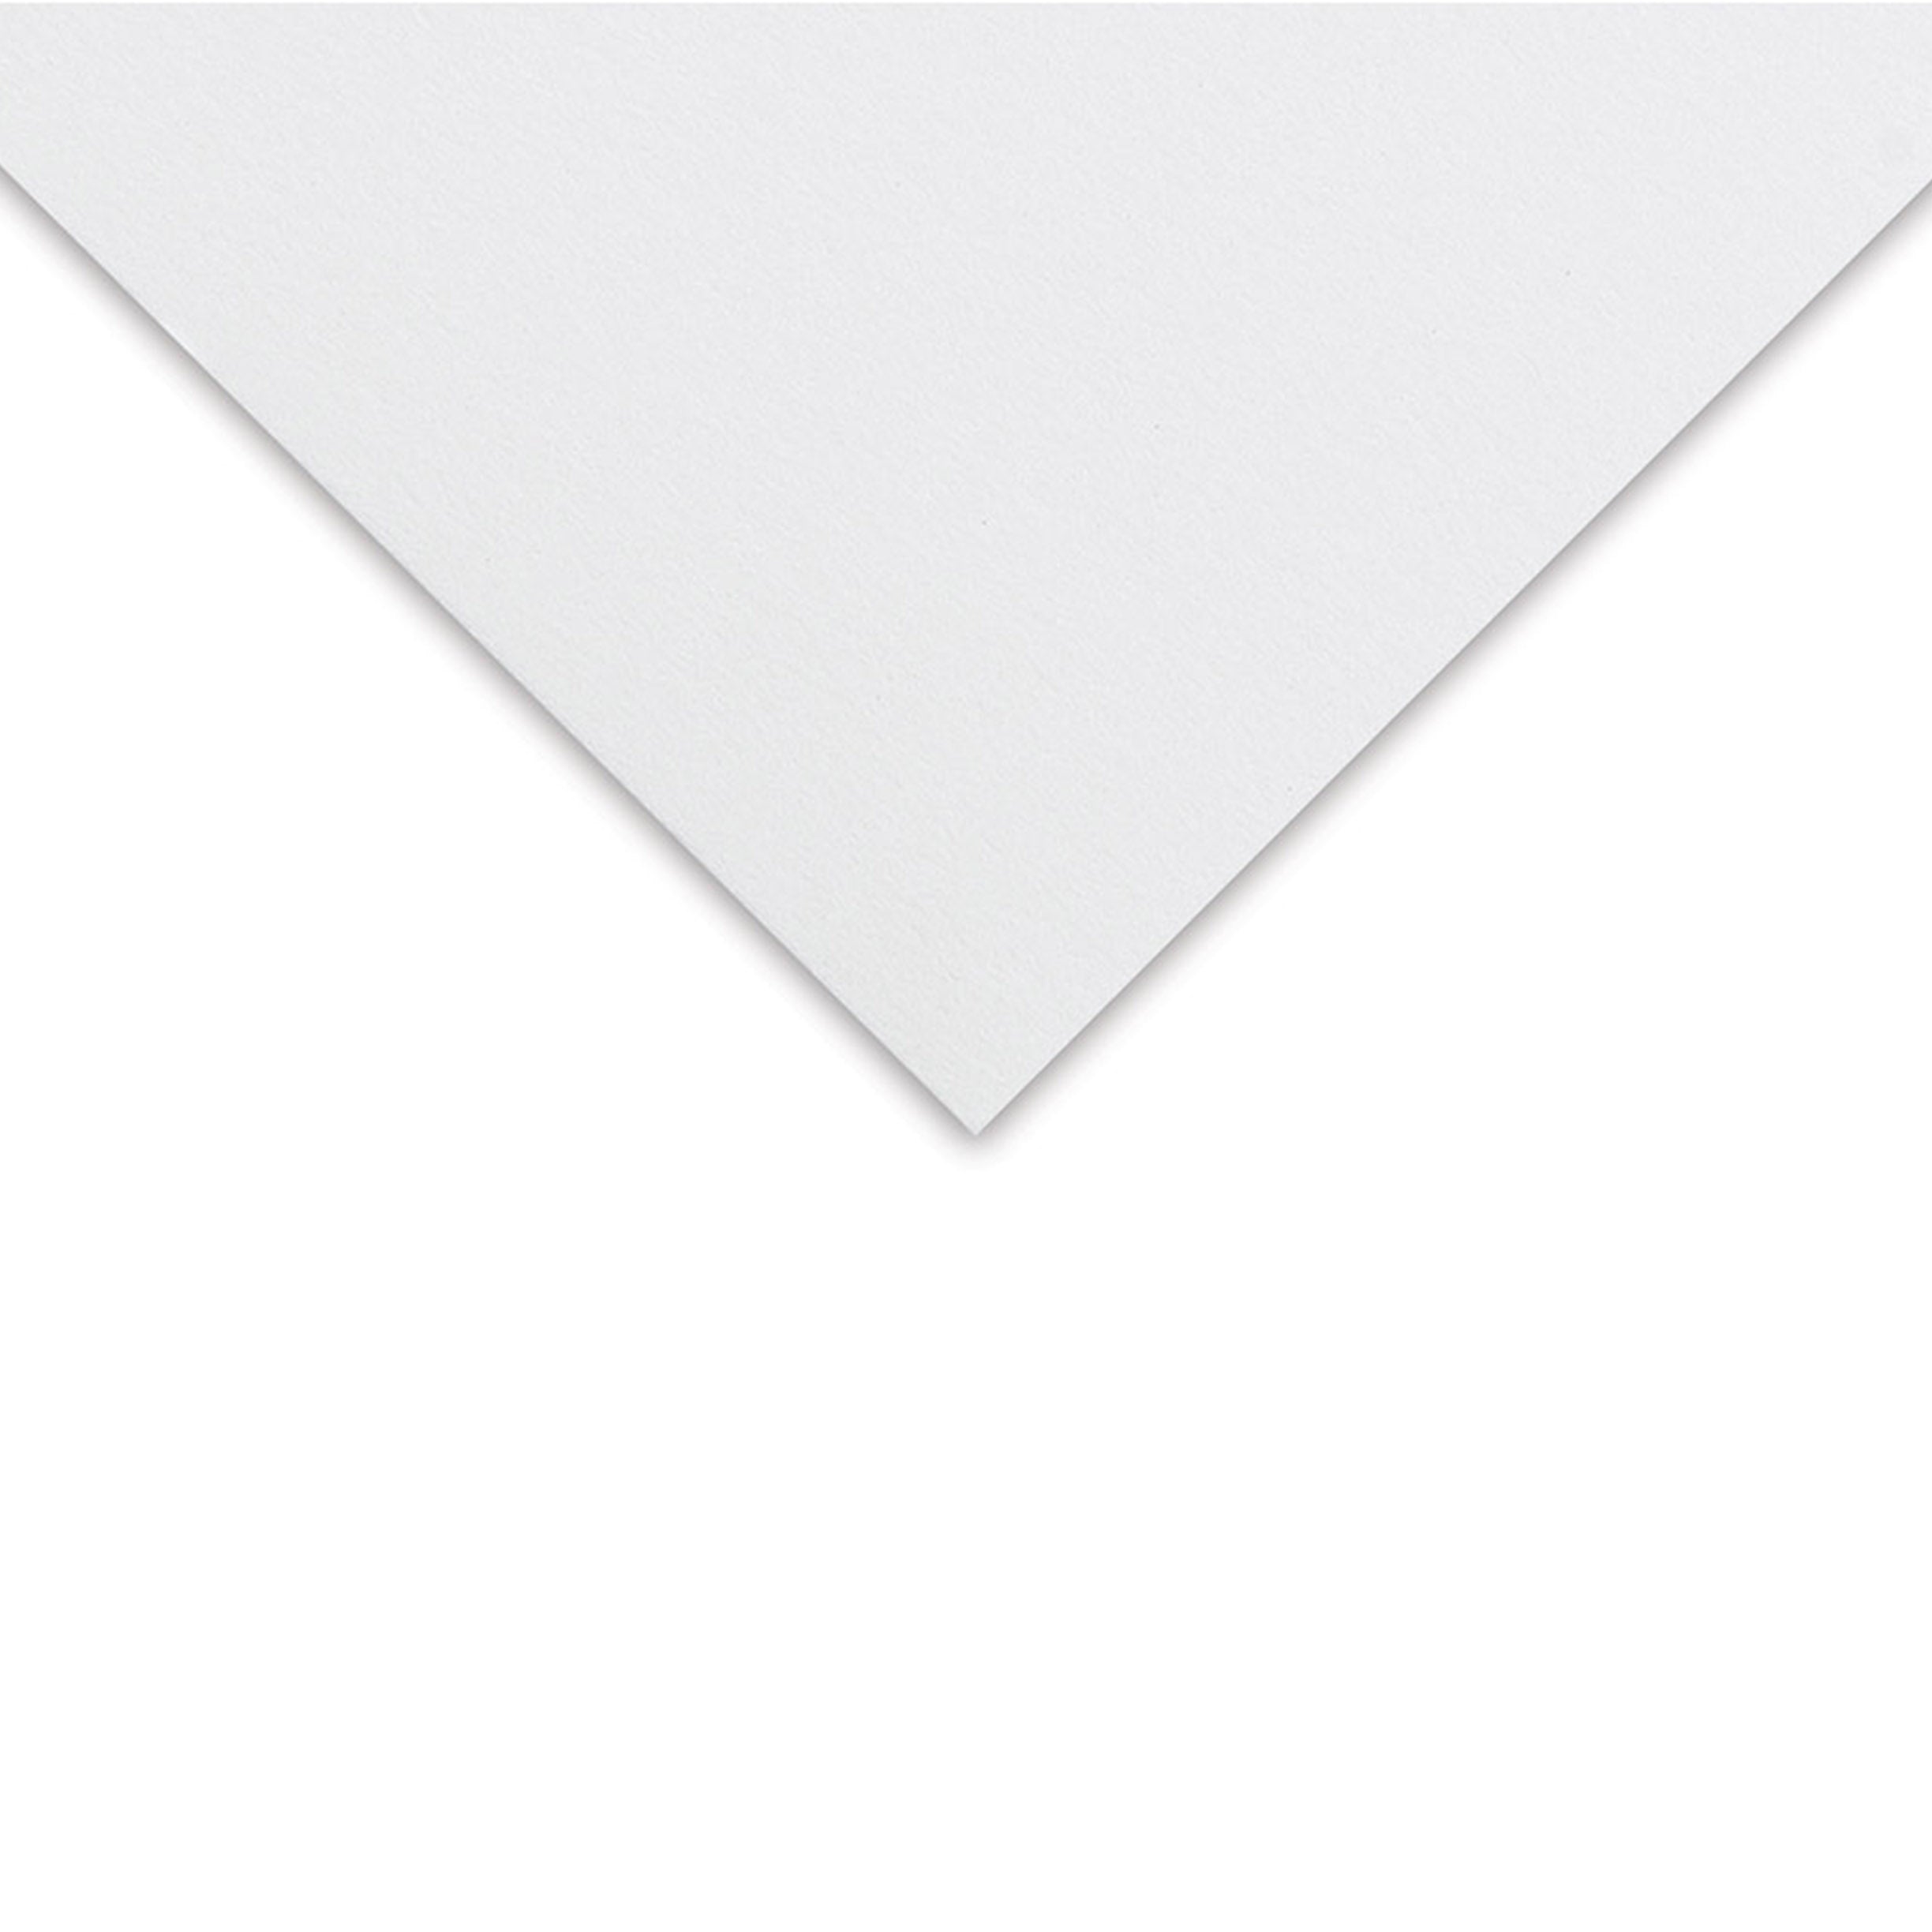 Lenox Cotton Paper Pad by Legion Paper